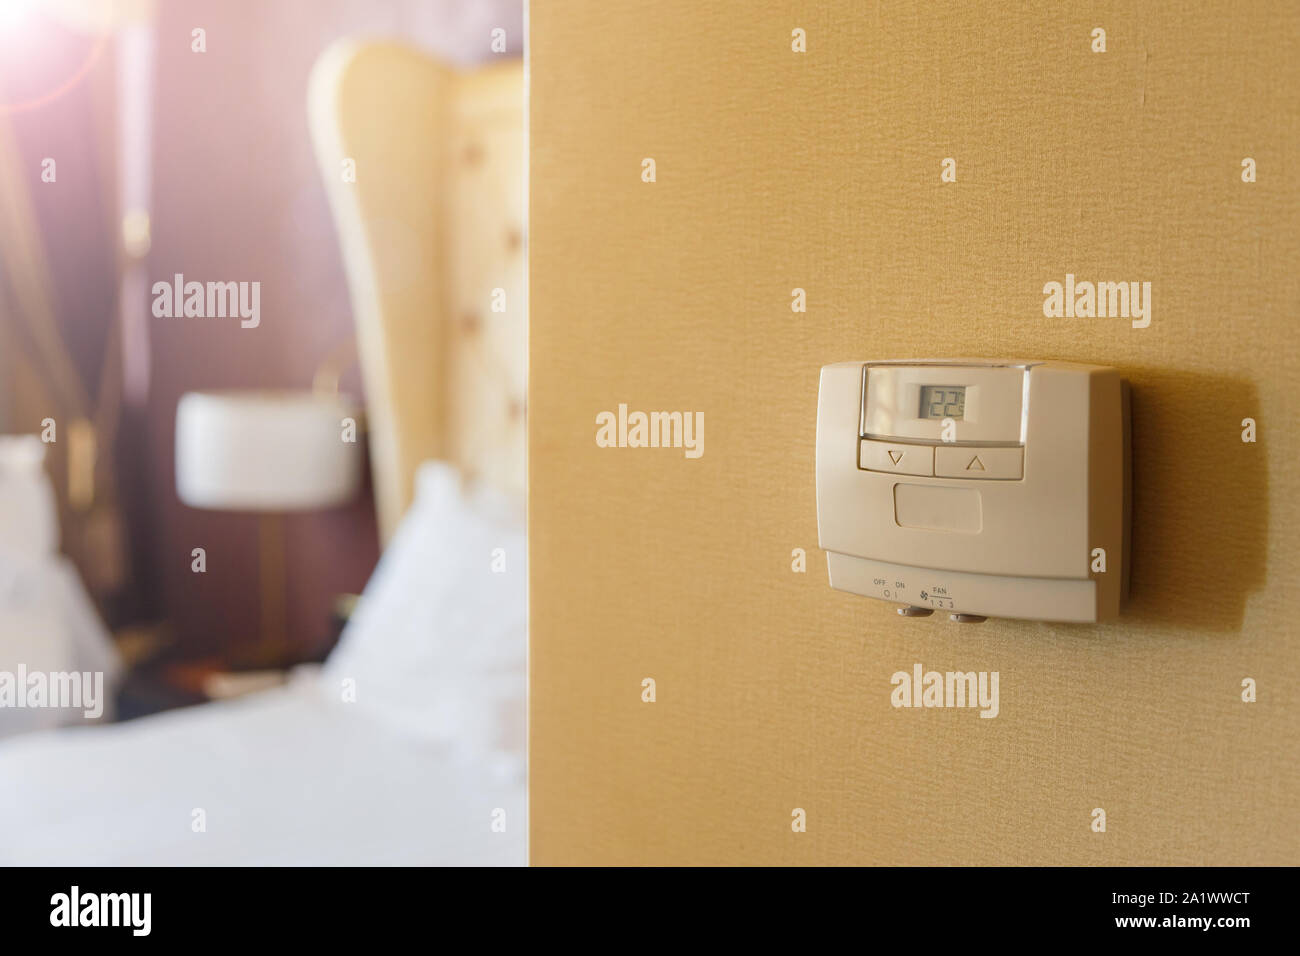 Wall display mostra la temperatura dell'aria all'interno della camera. temperatura e riscaldamento. Foto Stock